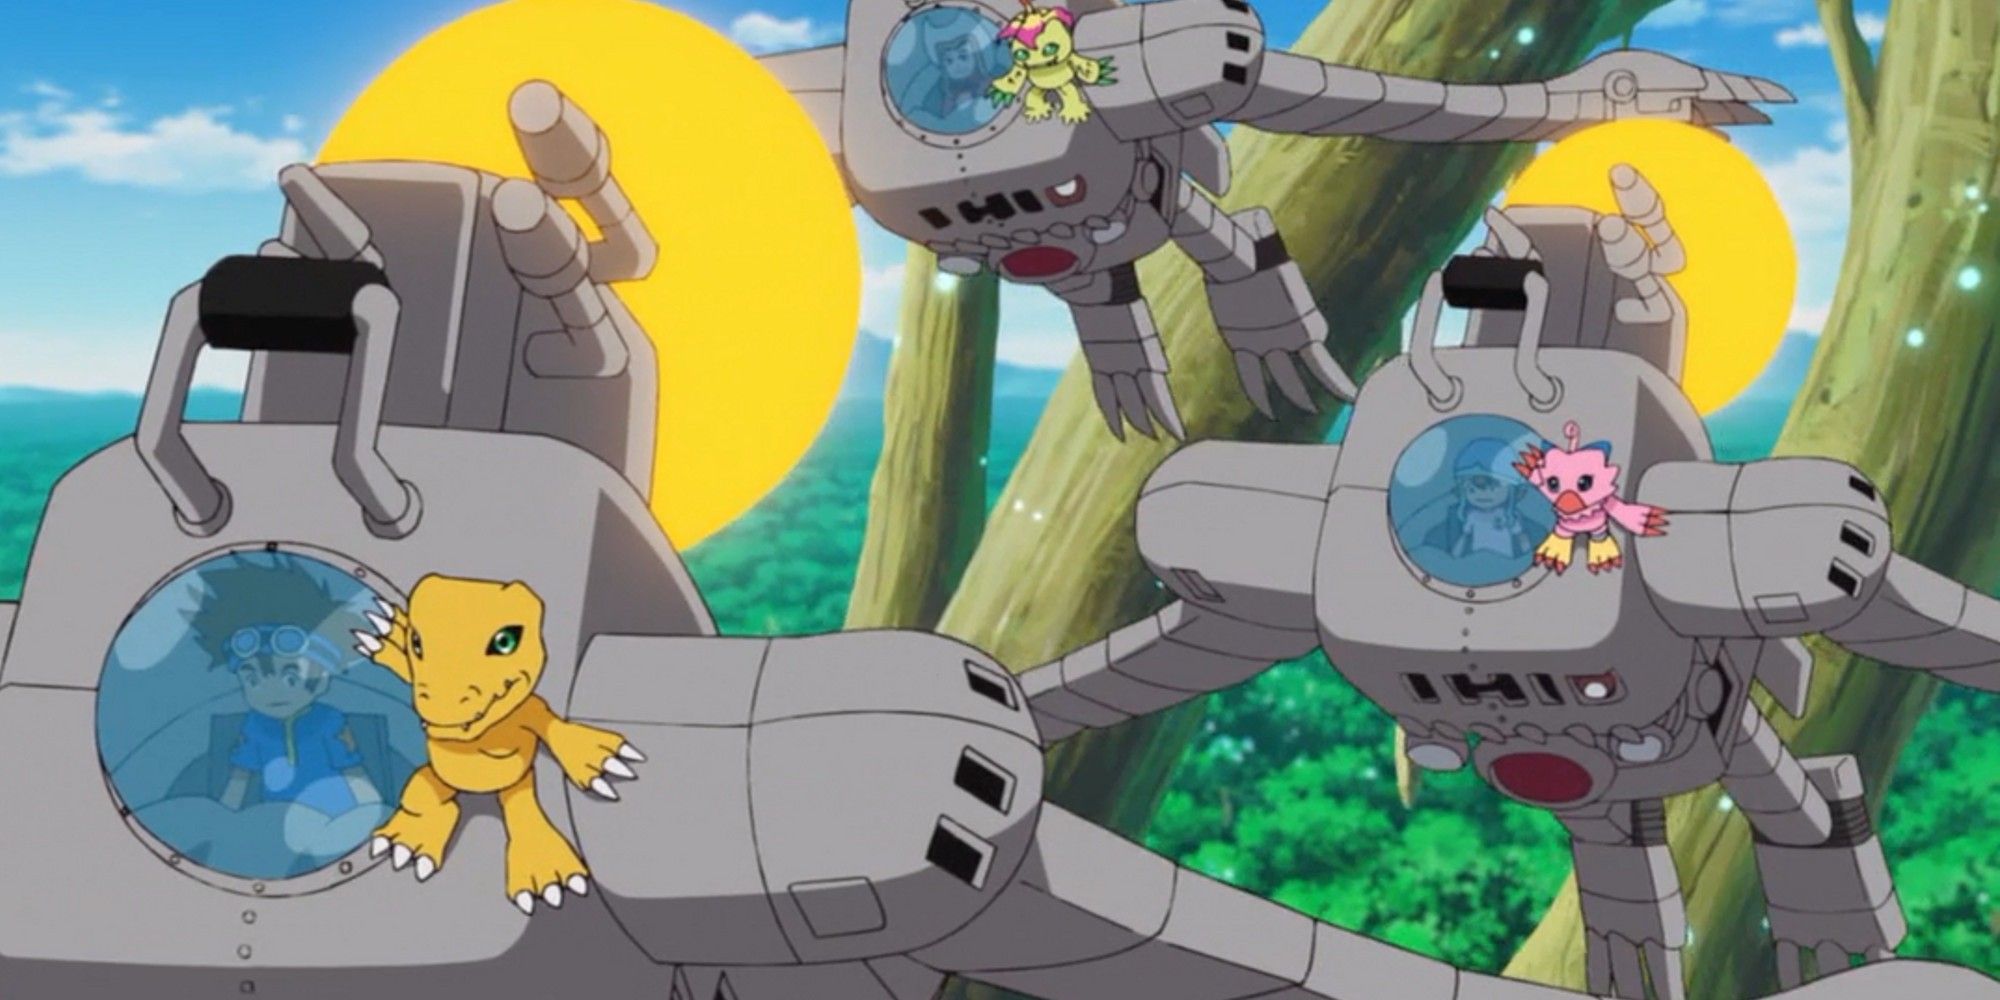 Digimon Adventure (2020): The Digidestined Piloting Mekanorimon